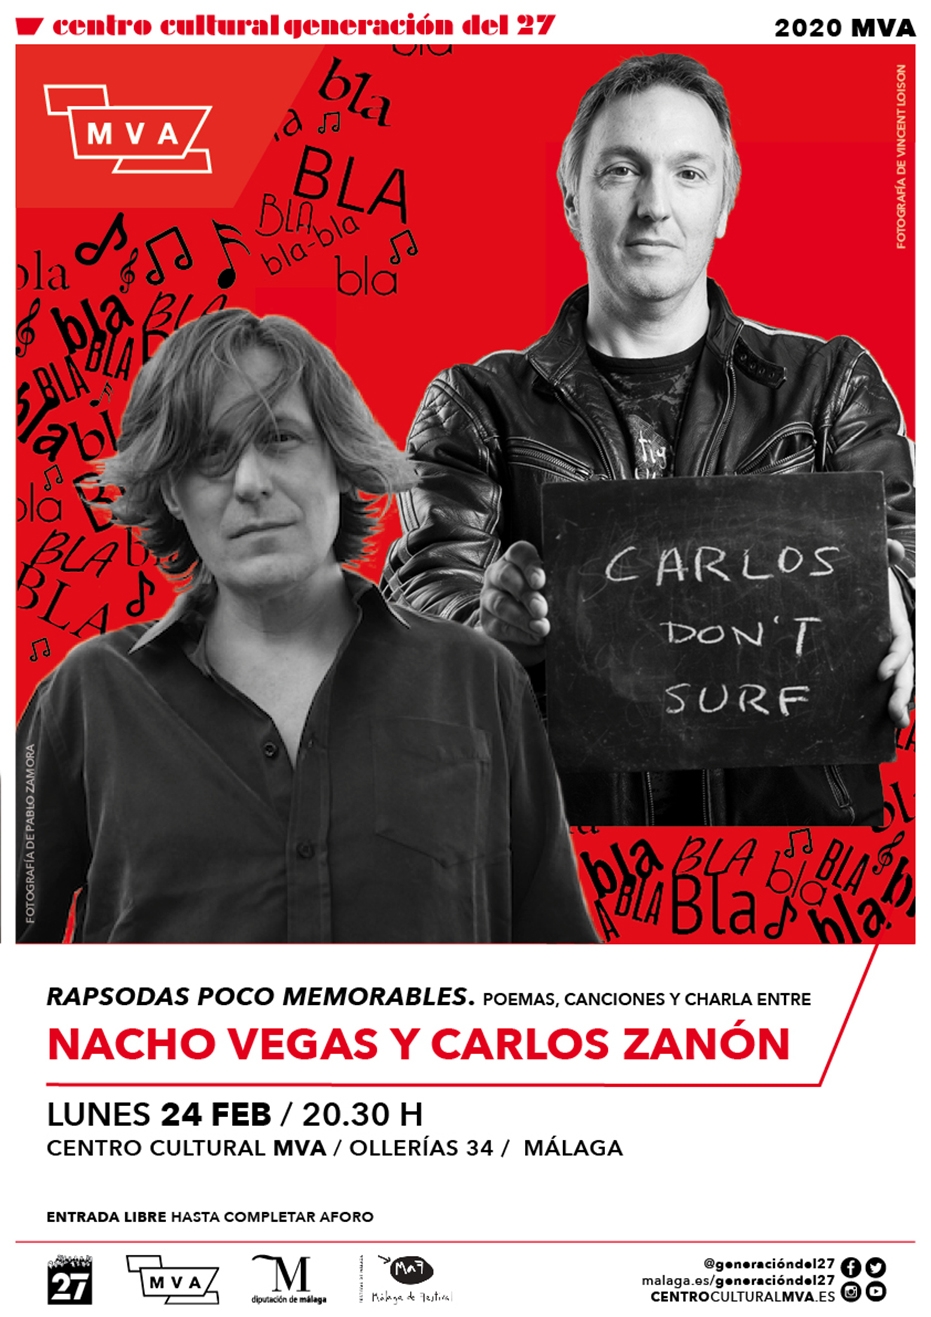 'Rapsodas poco memorables'. Poemas, canciones y conversación entre Nacho Vegas y Carlos Zanon